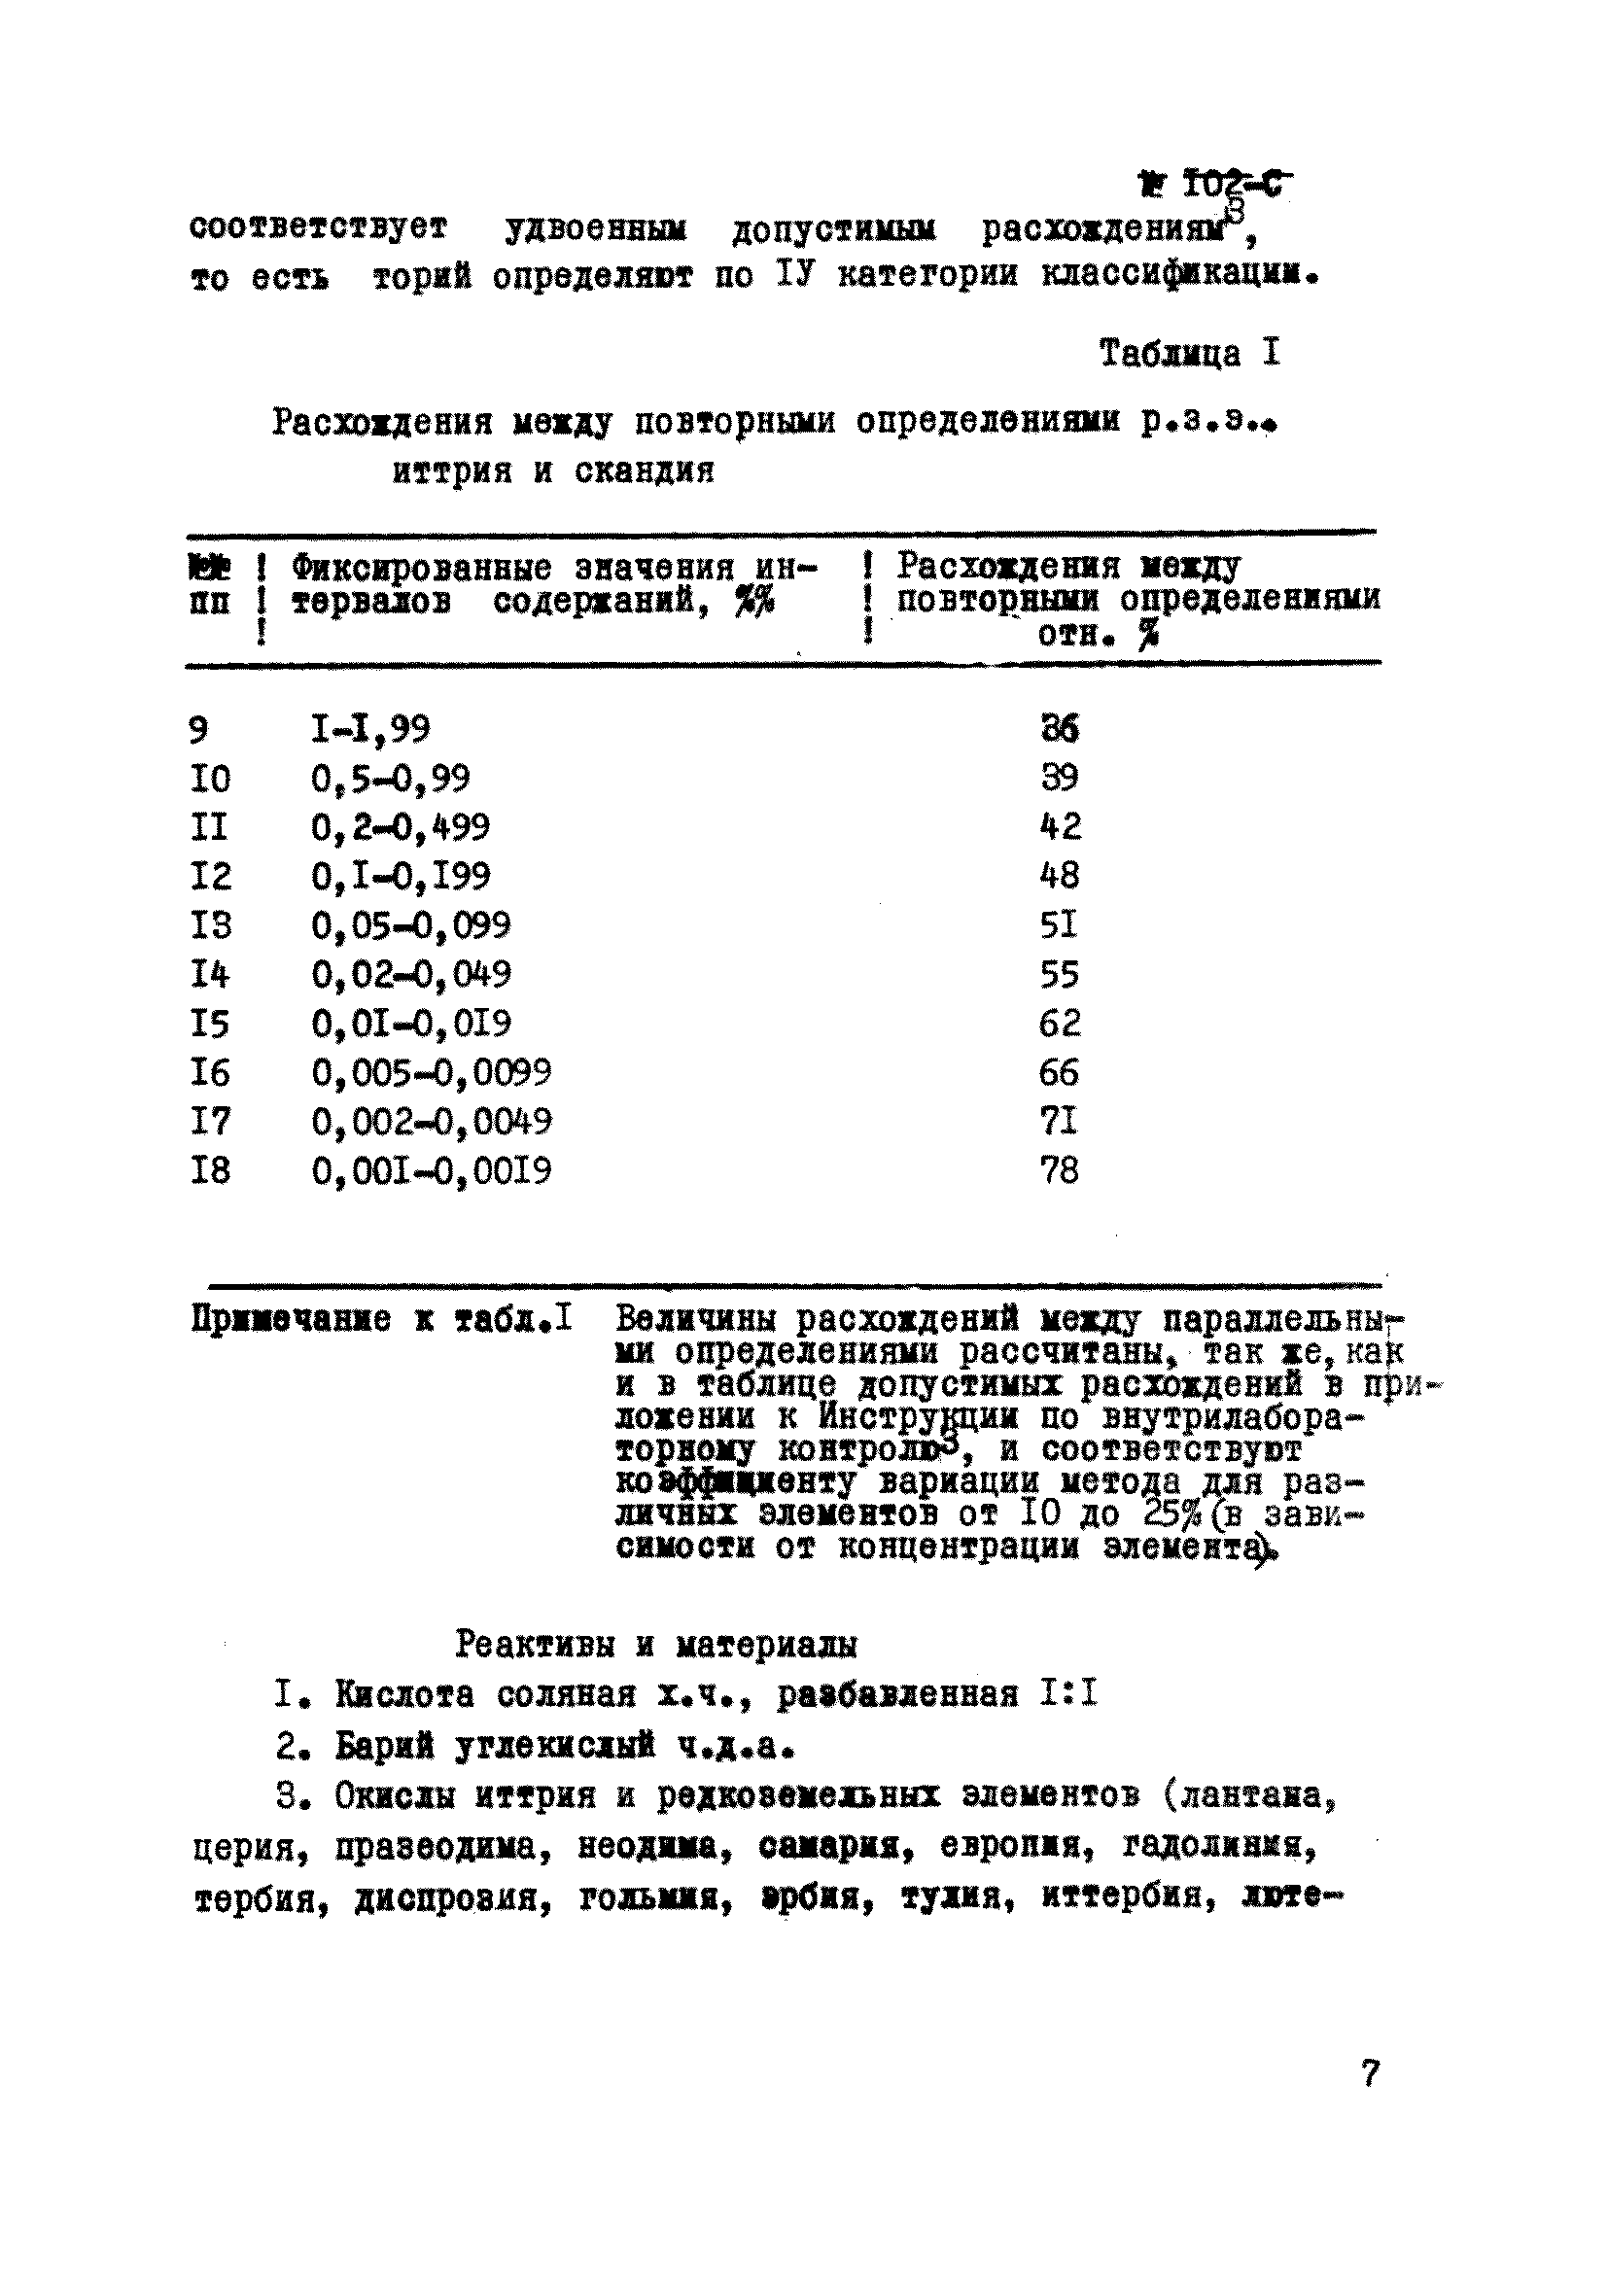 Инструкция НСАМ 102-С